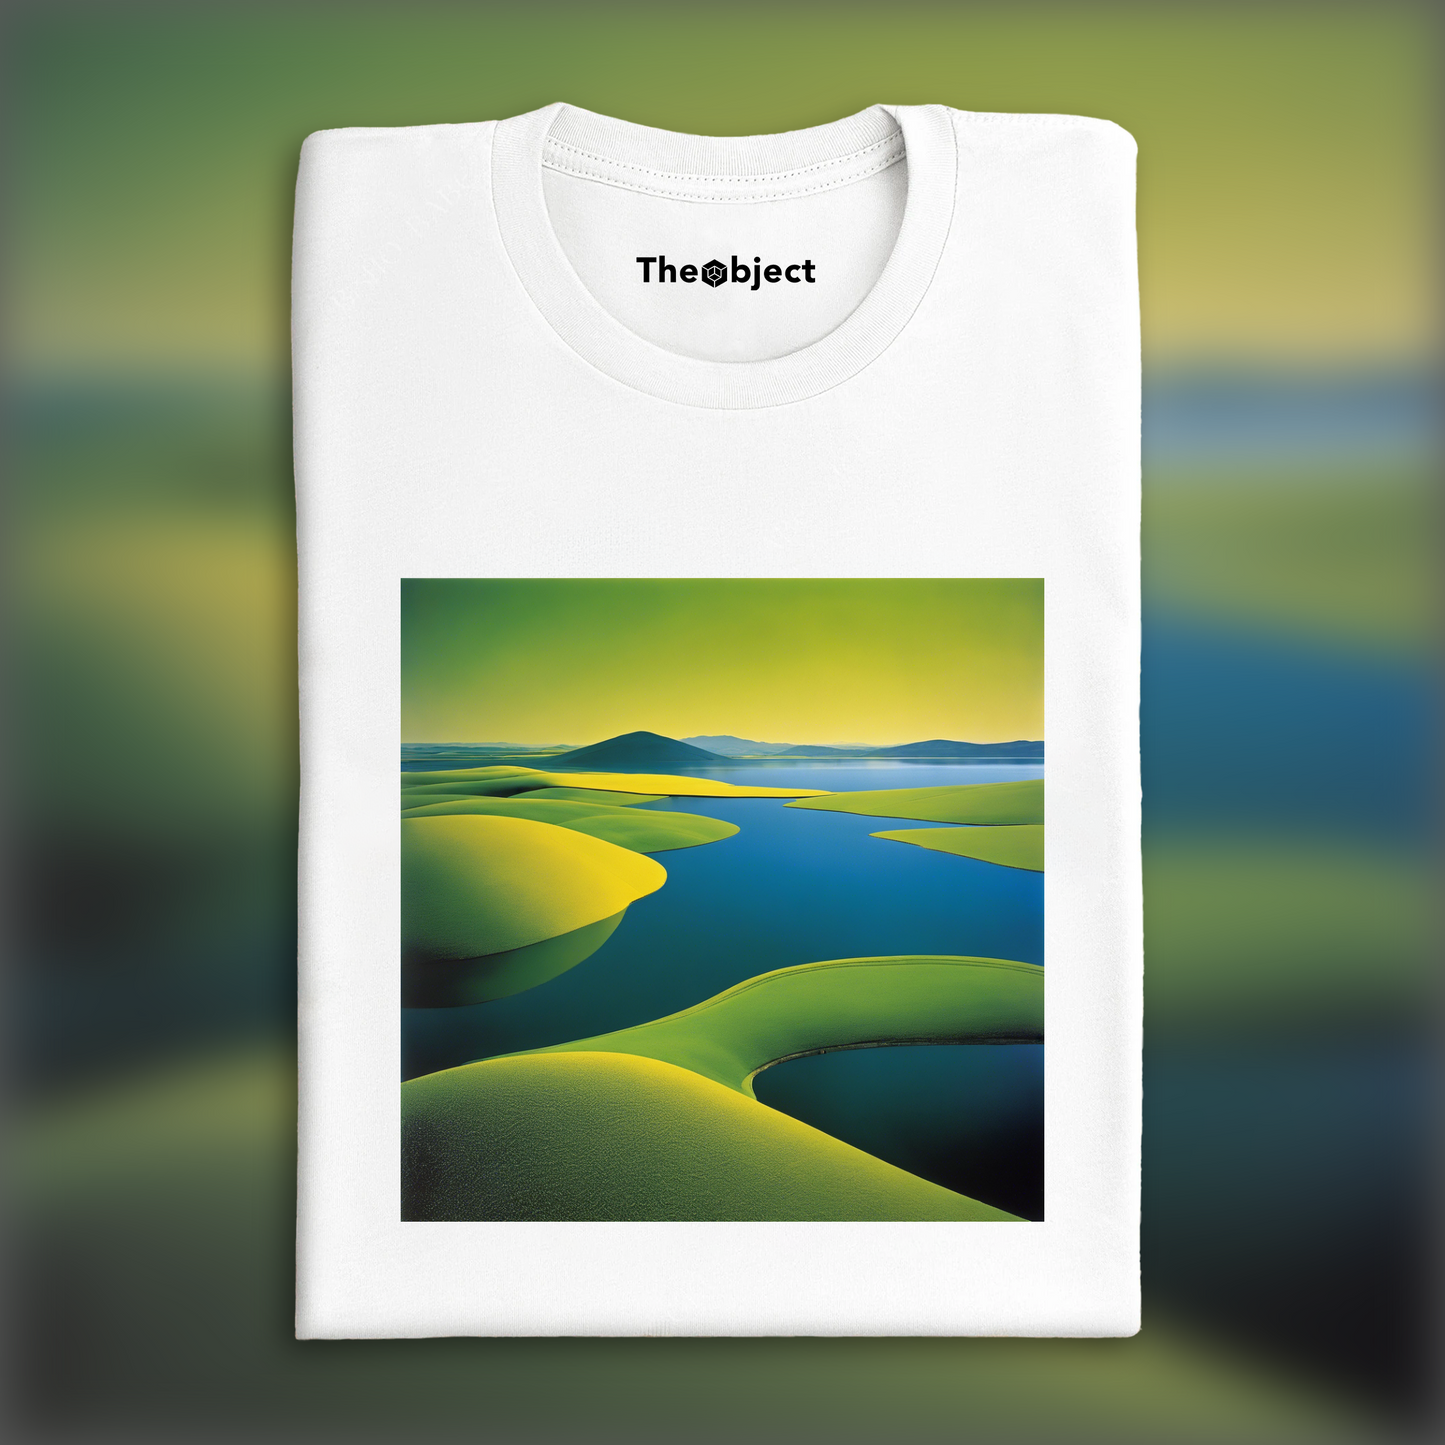 T-Shirt IA - Images colorées et abstraites, capturant des compositions géométriques dans les paysages, Lac - 3401843125